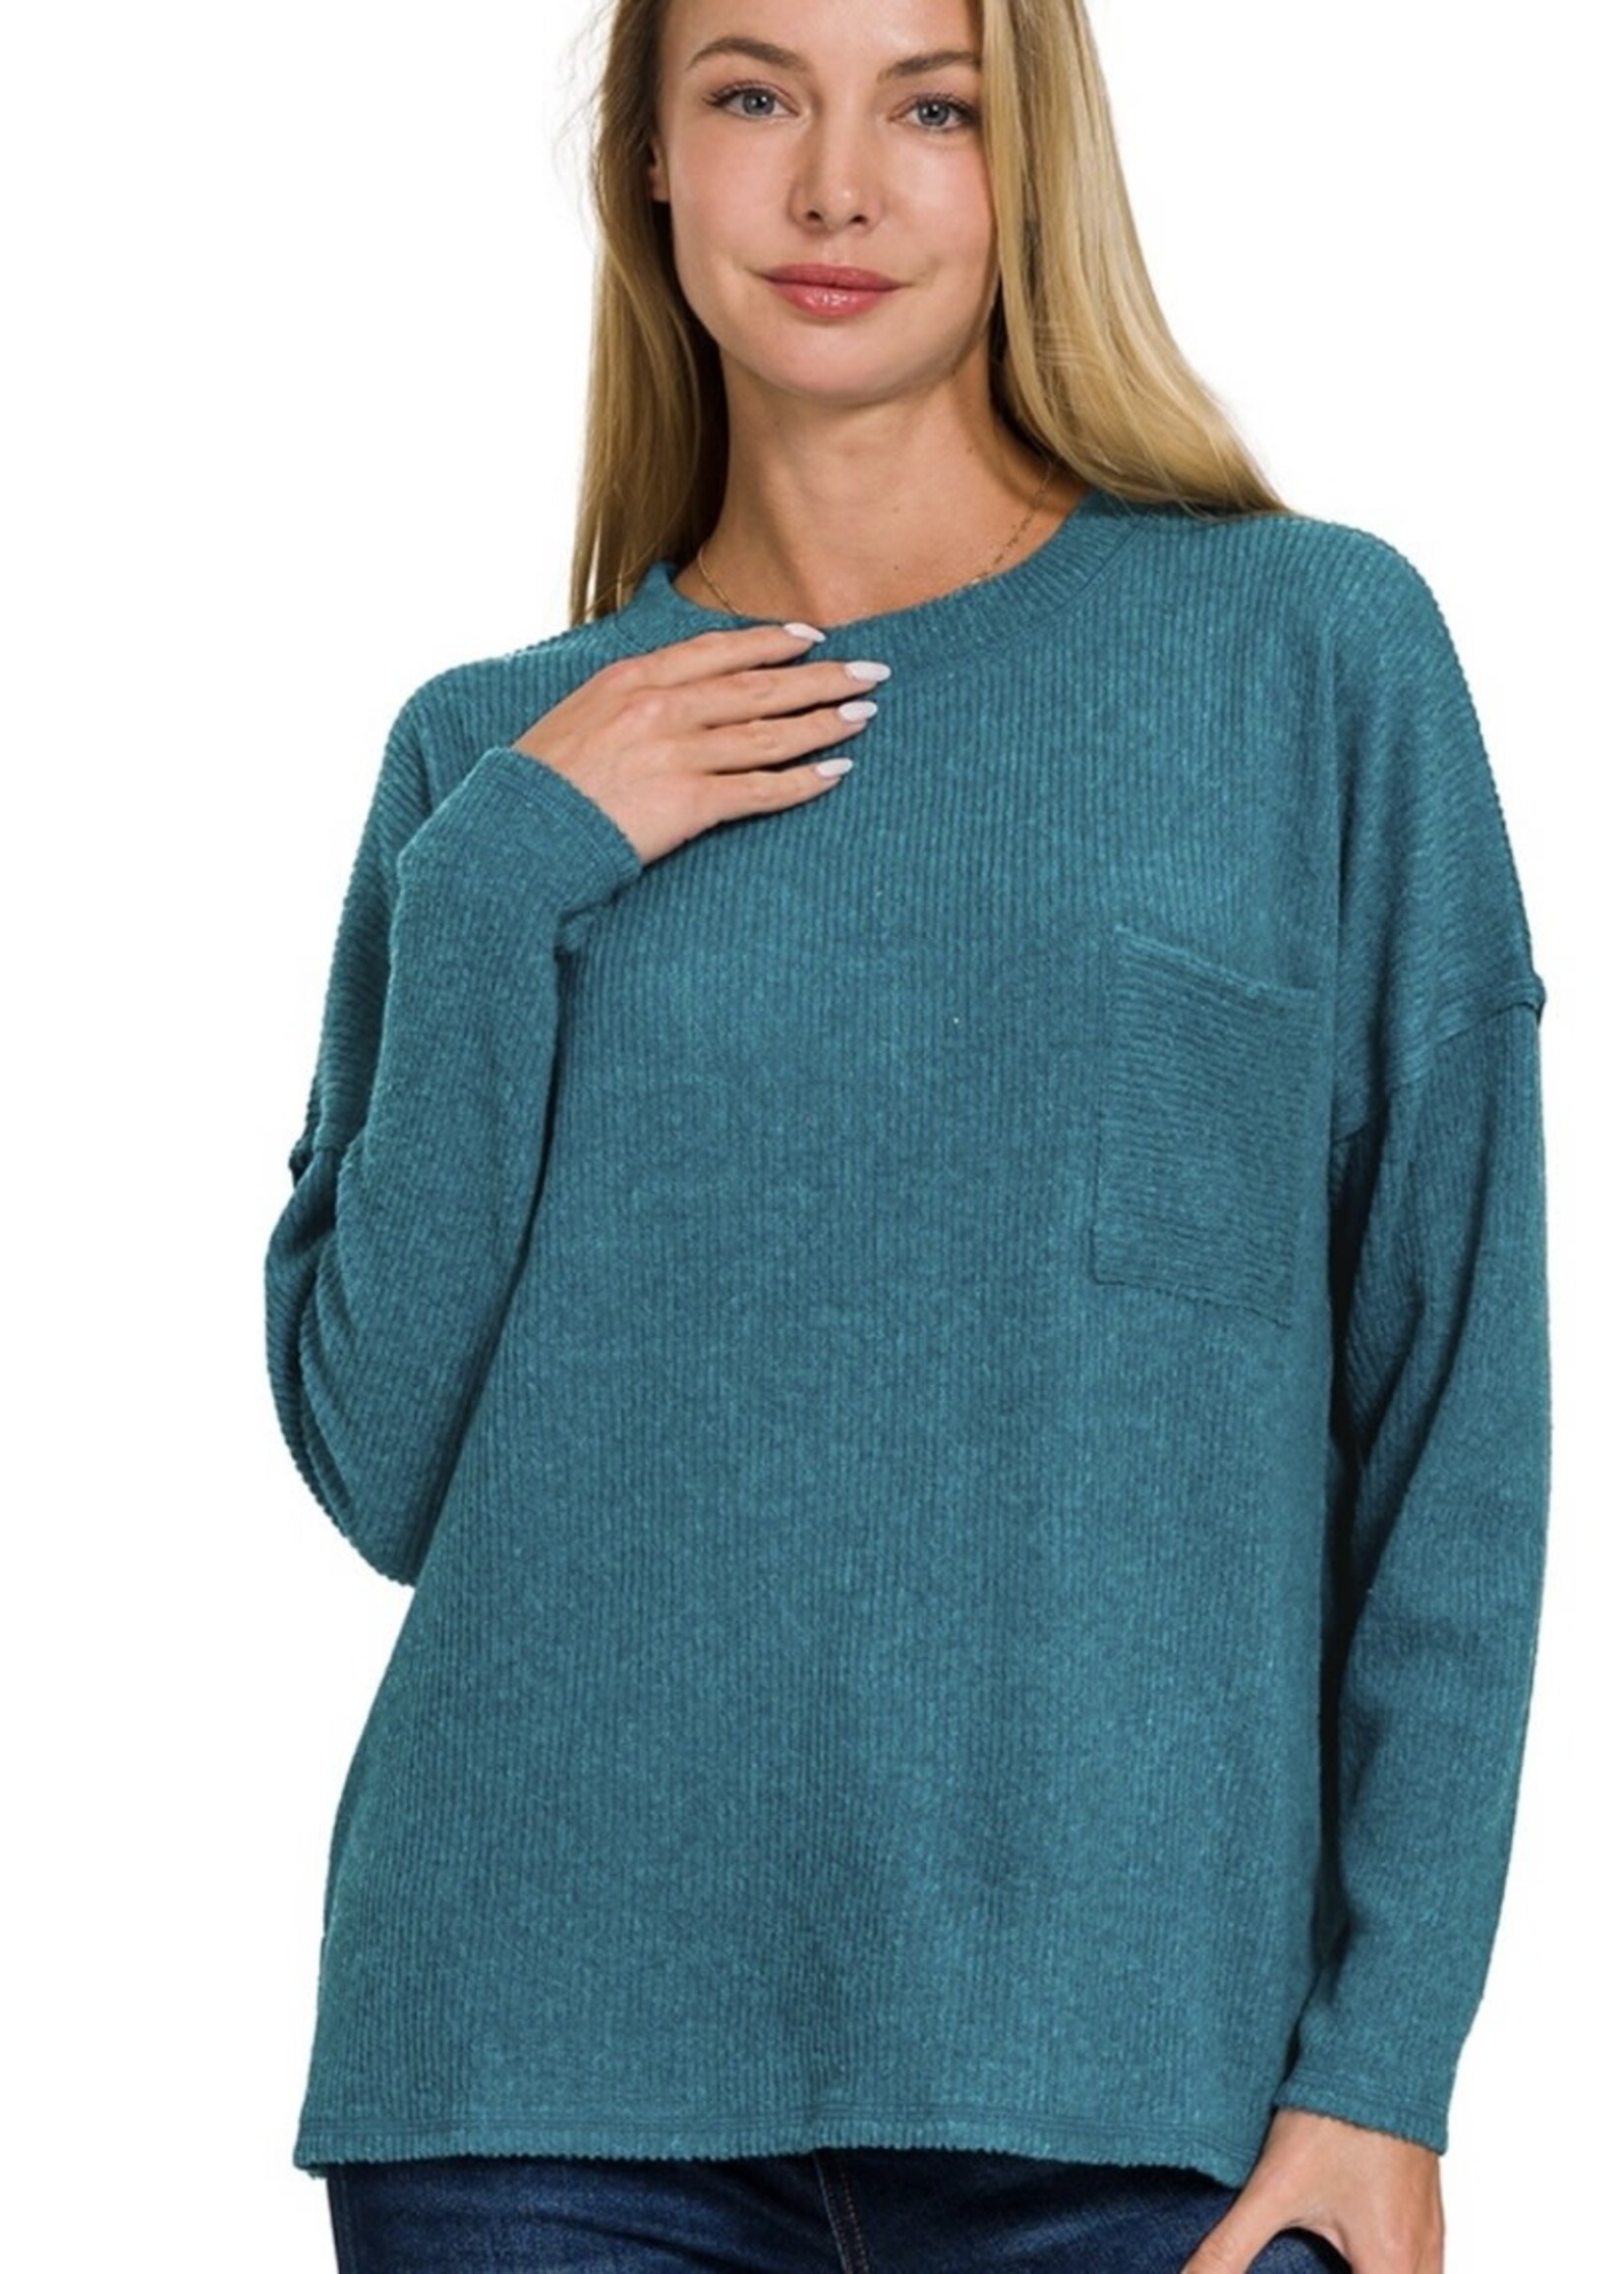 Harmony Ribbed Brushed Sweater